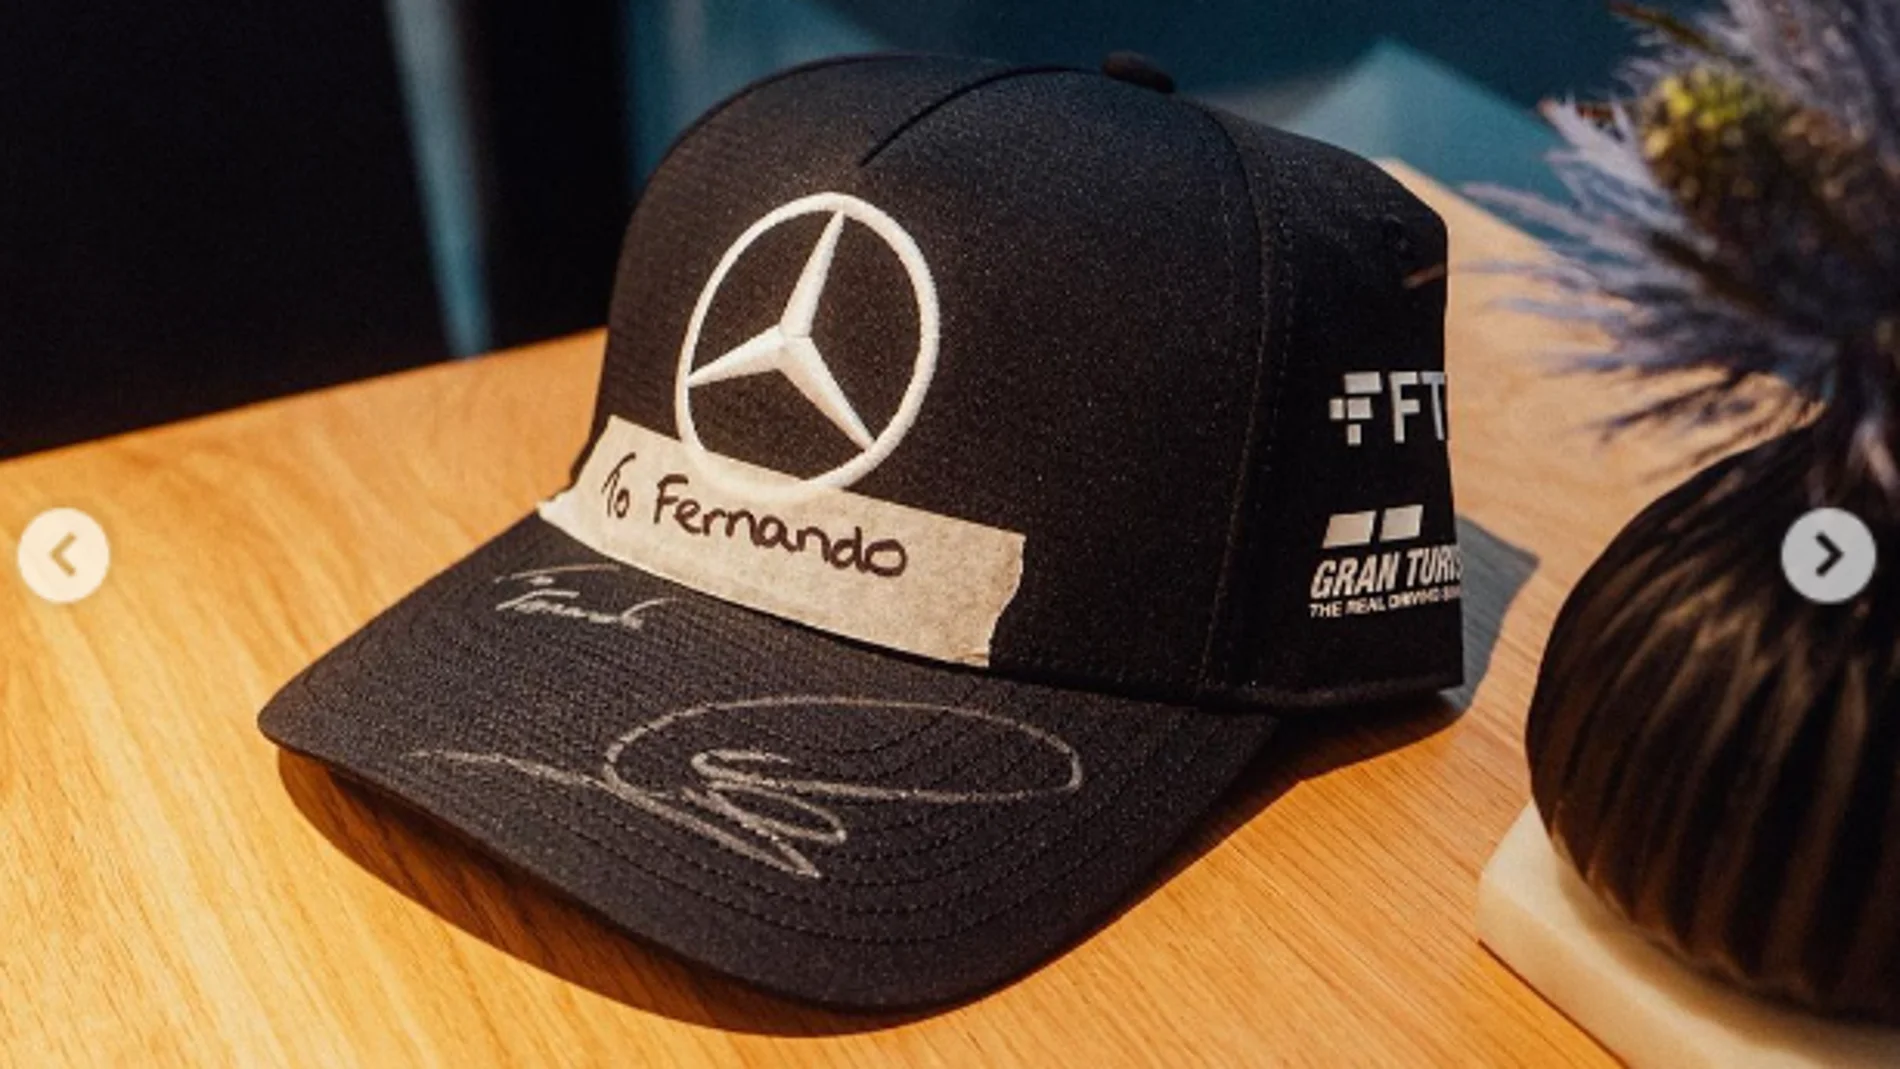 &#39;To Fernando&#39;: La foto de Hamilton en Instagram 